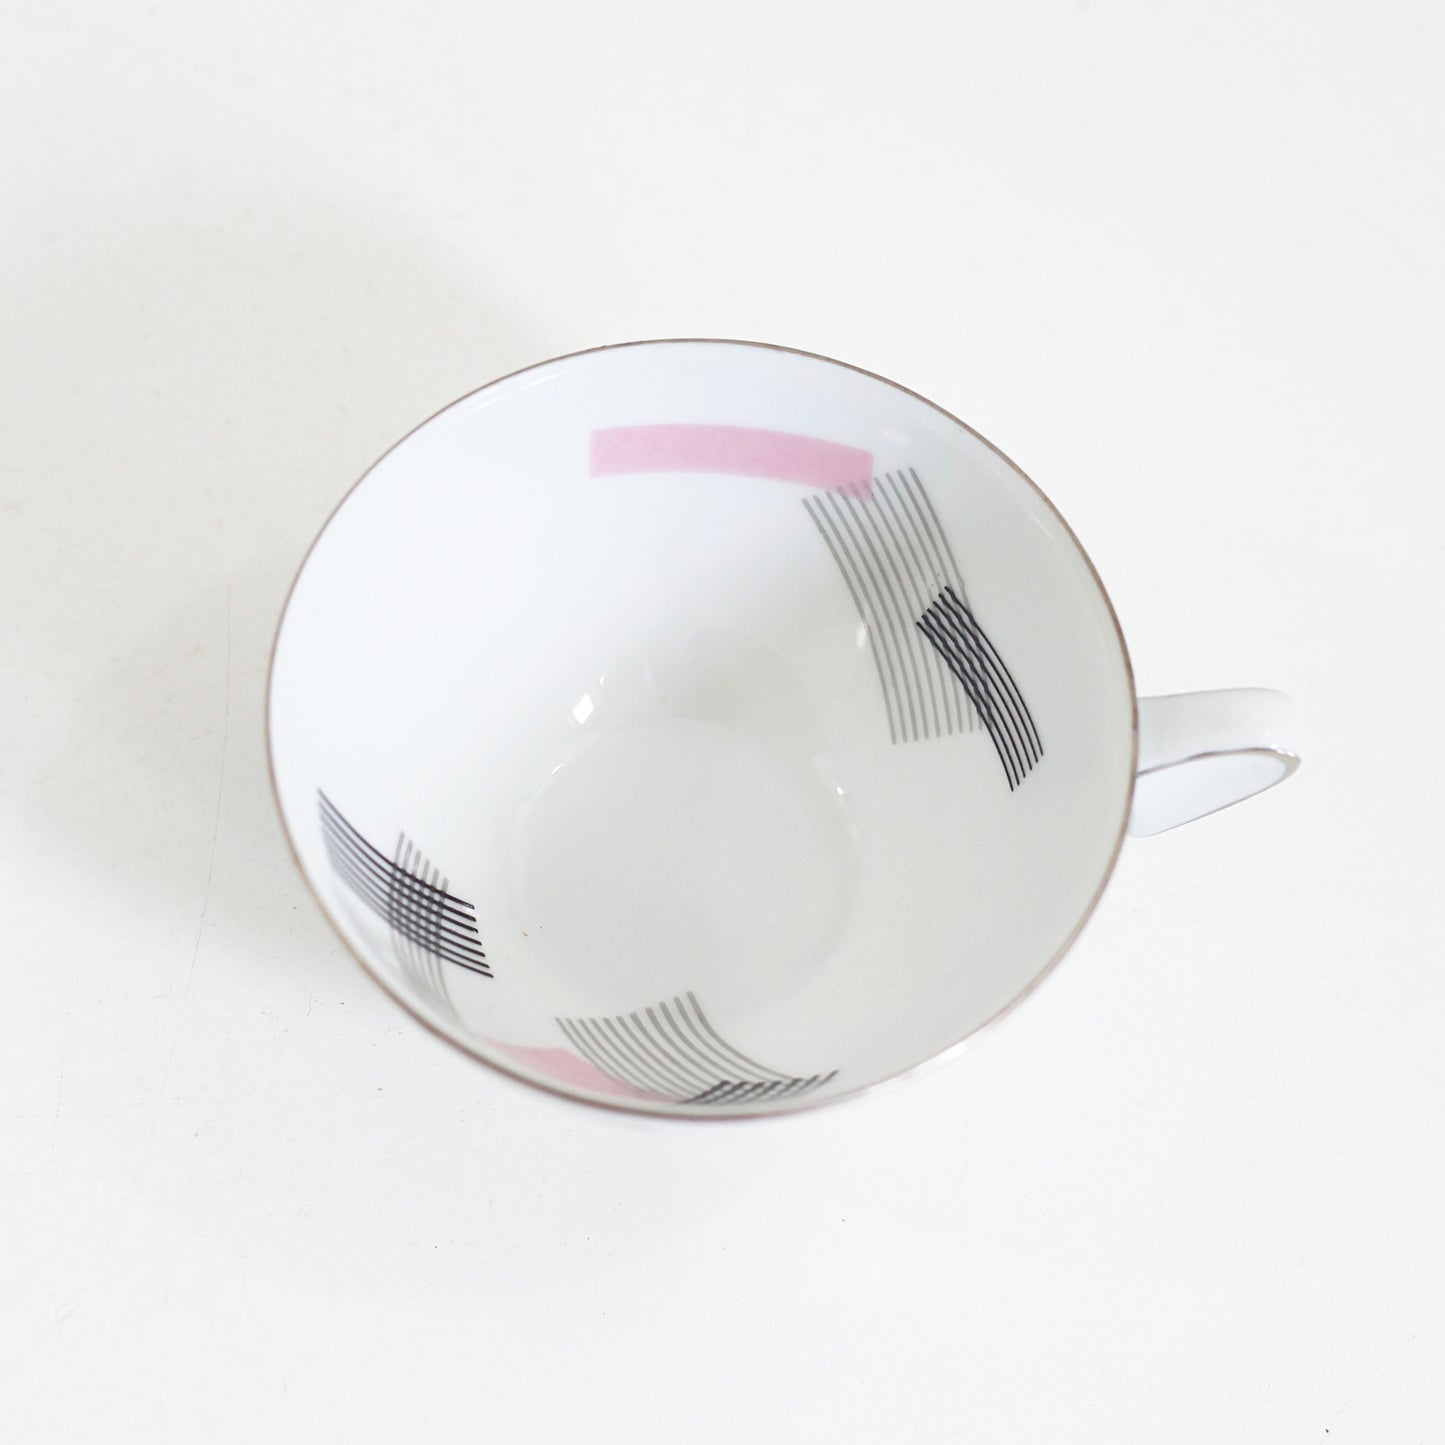 SOLD - Mid Century Modern Pink Atomic Tea Cups by Noritake Japan